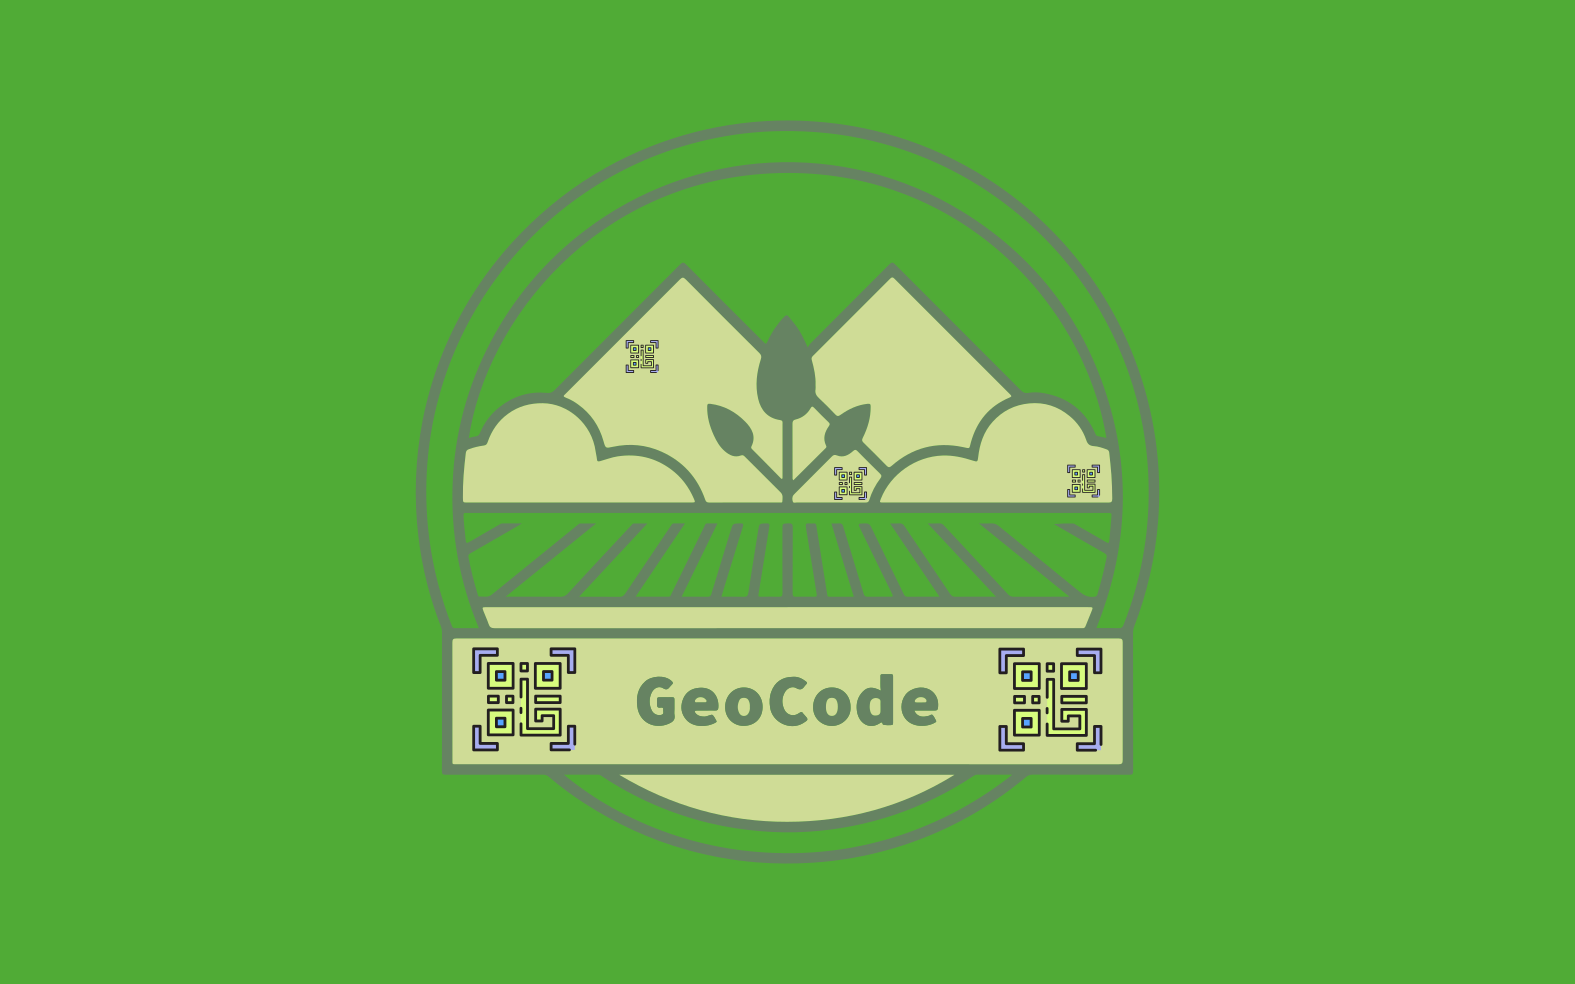 GeoCode